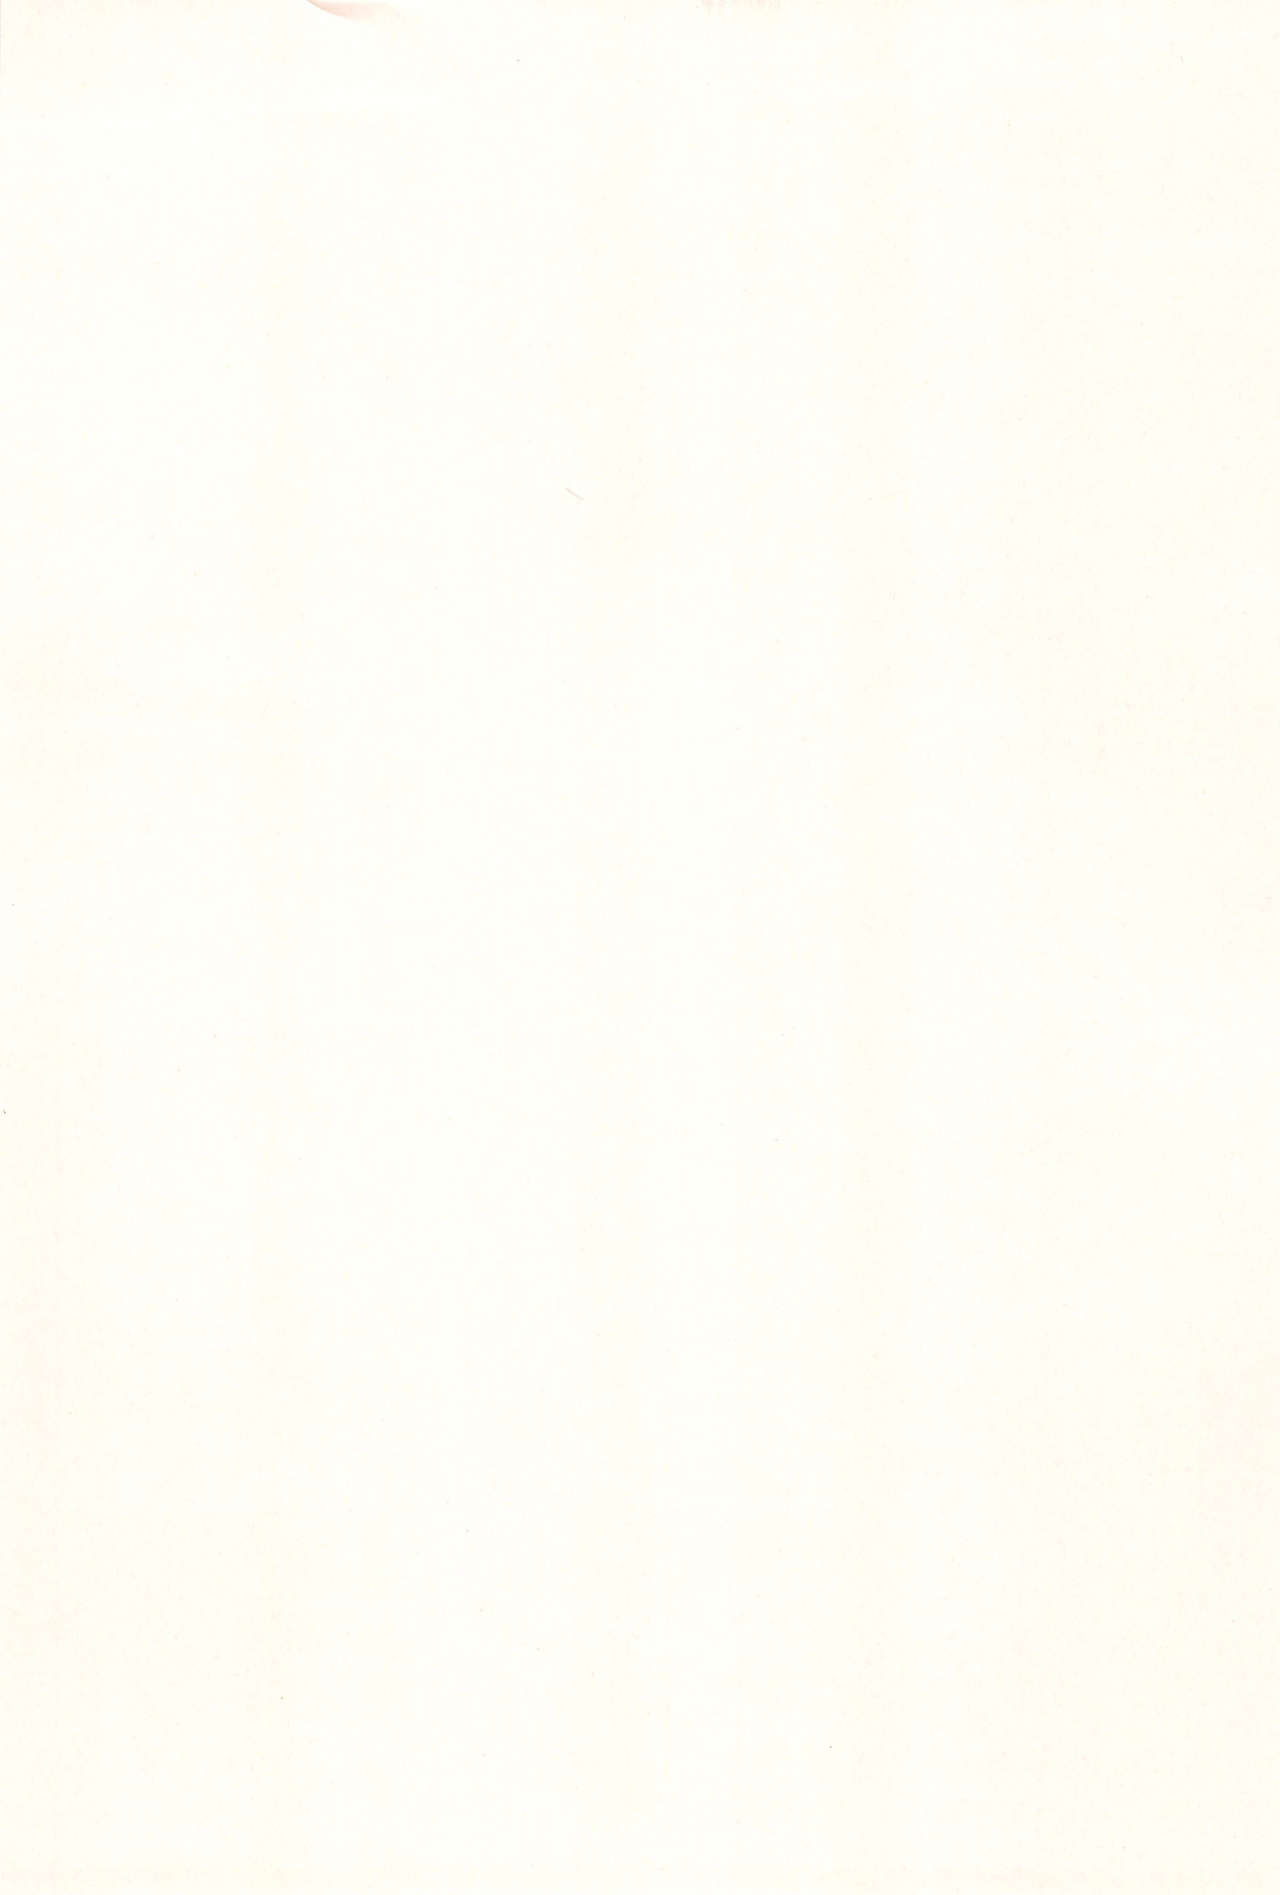 (ぷにけっと23) [秒殺狸団 (佐伯達也)] 明日葉のノーパンハメハメ大作戦 (ロッテのおもちゃ!)